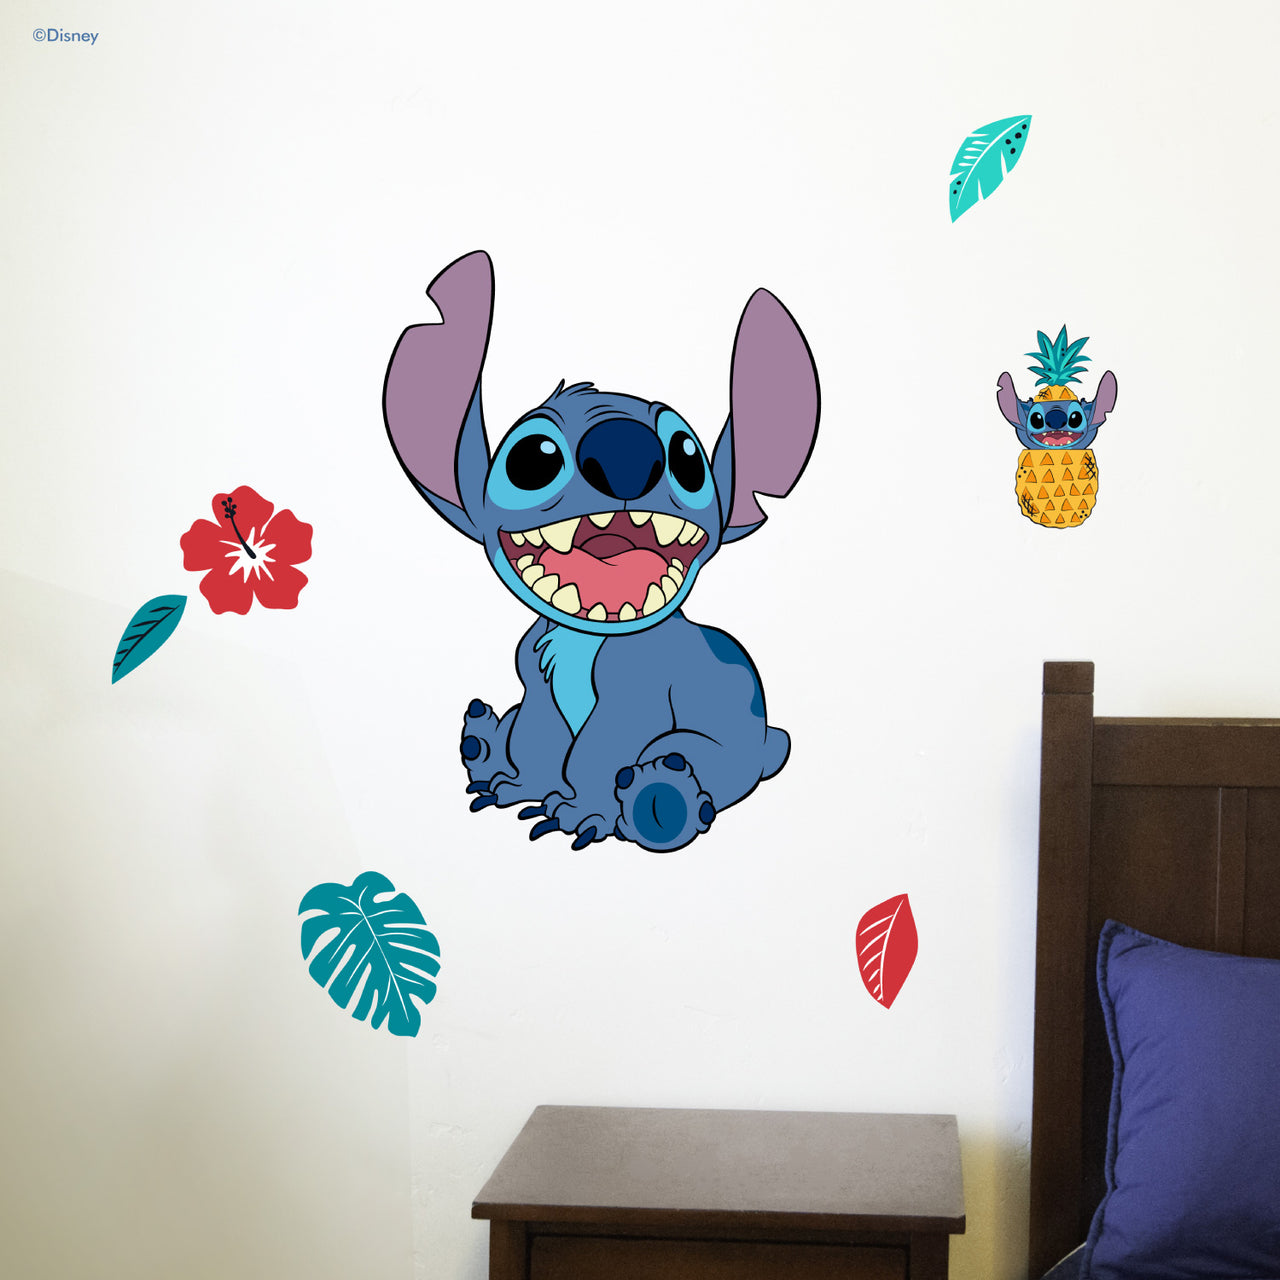 Lilo & Stitch Interactive Wall Decal – Decalcomania